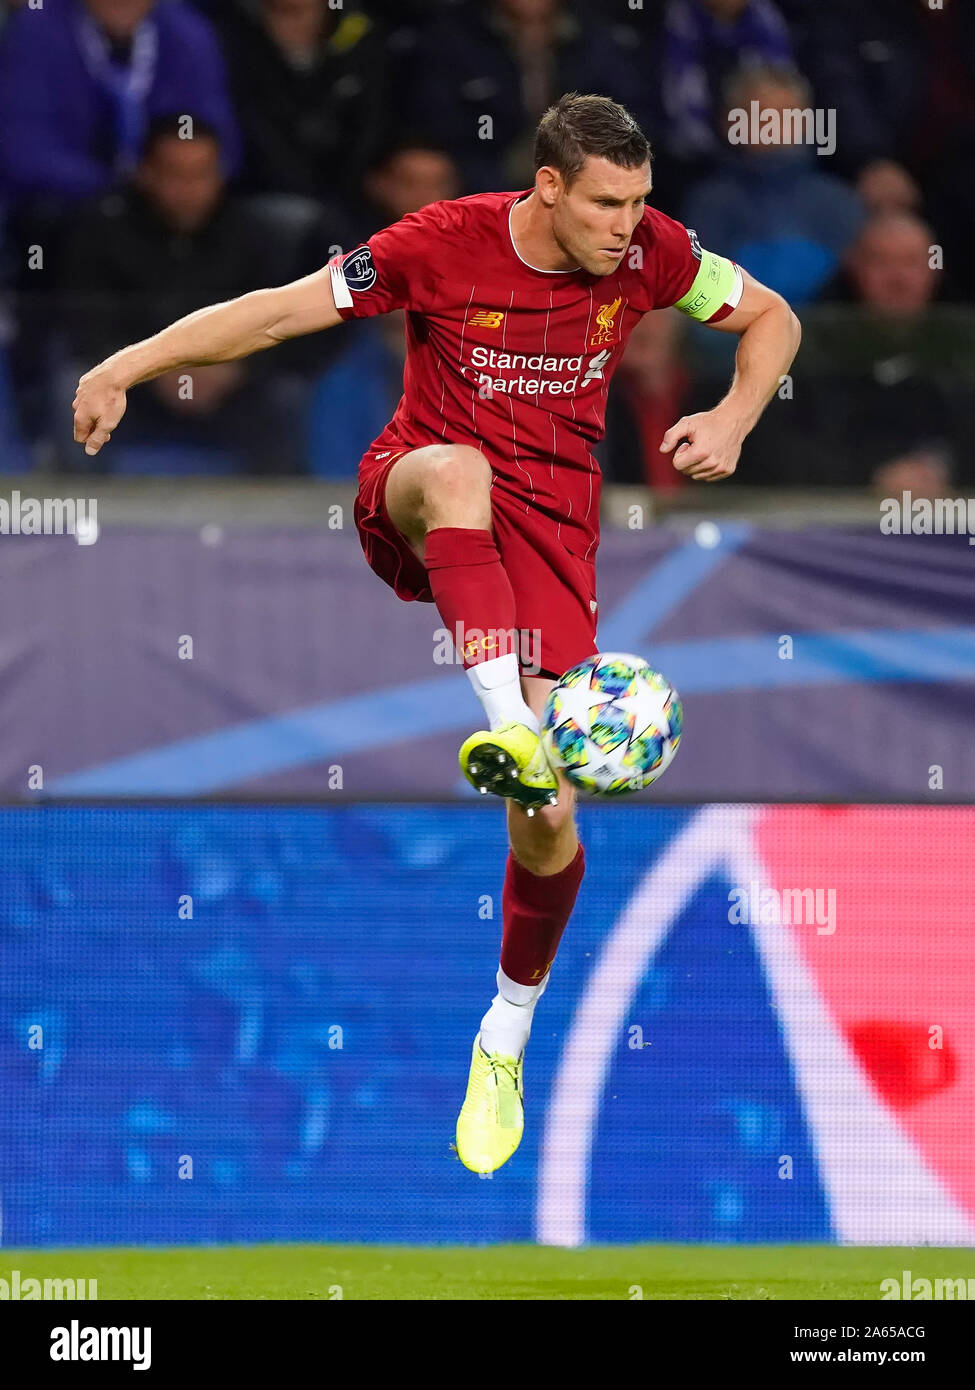 James Milner of Liverpool FC during Champions League KRC Genk-Liverpool on October 23 2019 in Genk, Belgium Credit: Geert van Erven/SCS/AFLO/Alamy Live News Stock Photo